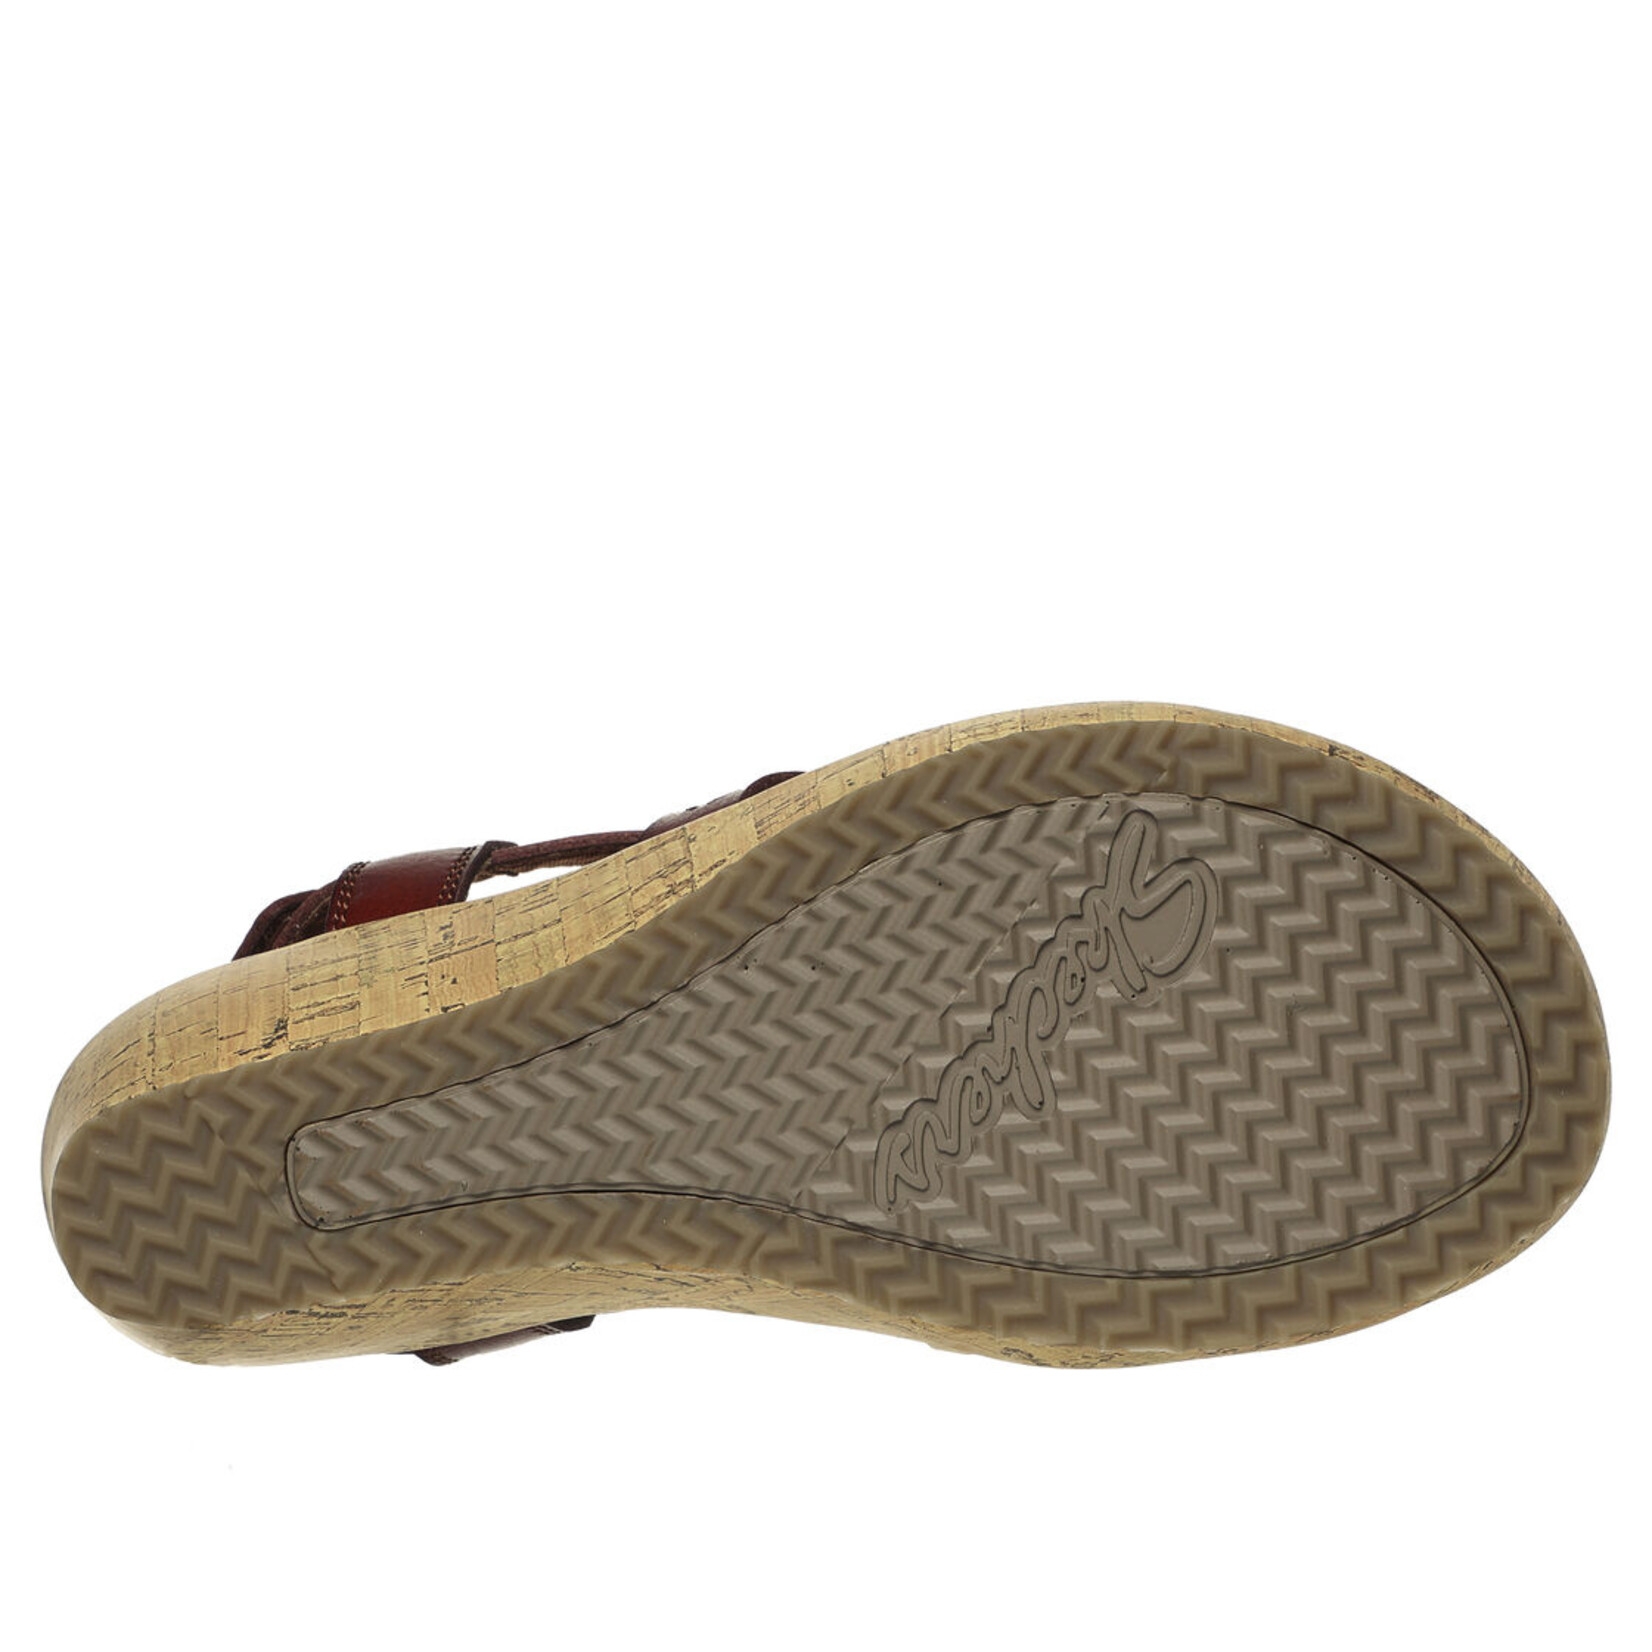 Skechers Skechers luxe foam cork wedge sandal